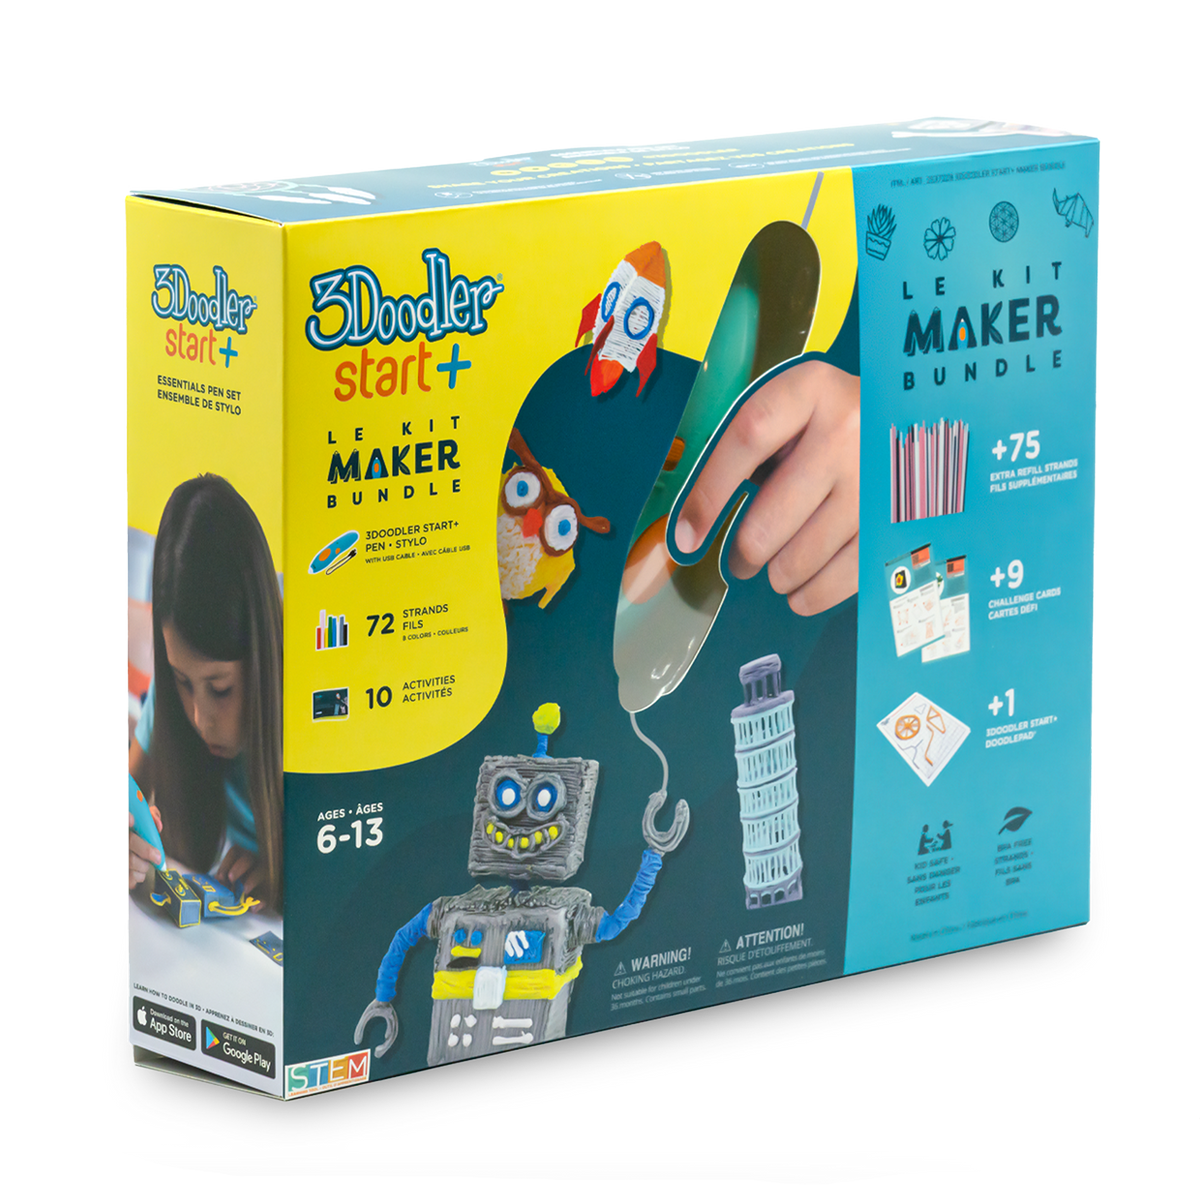 3Doodler Start+ Maker Bundle - Start Pens